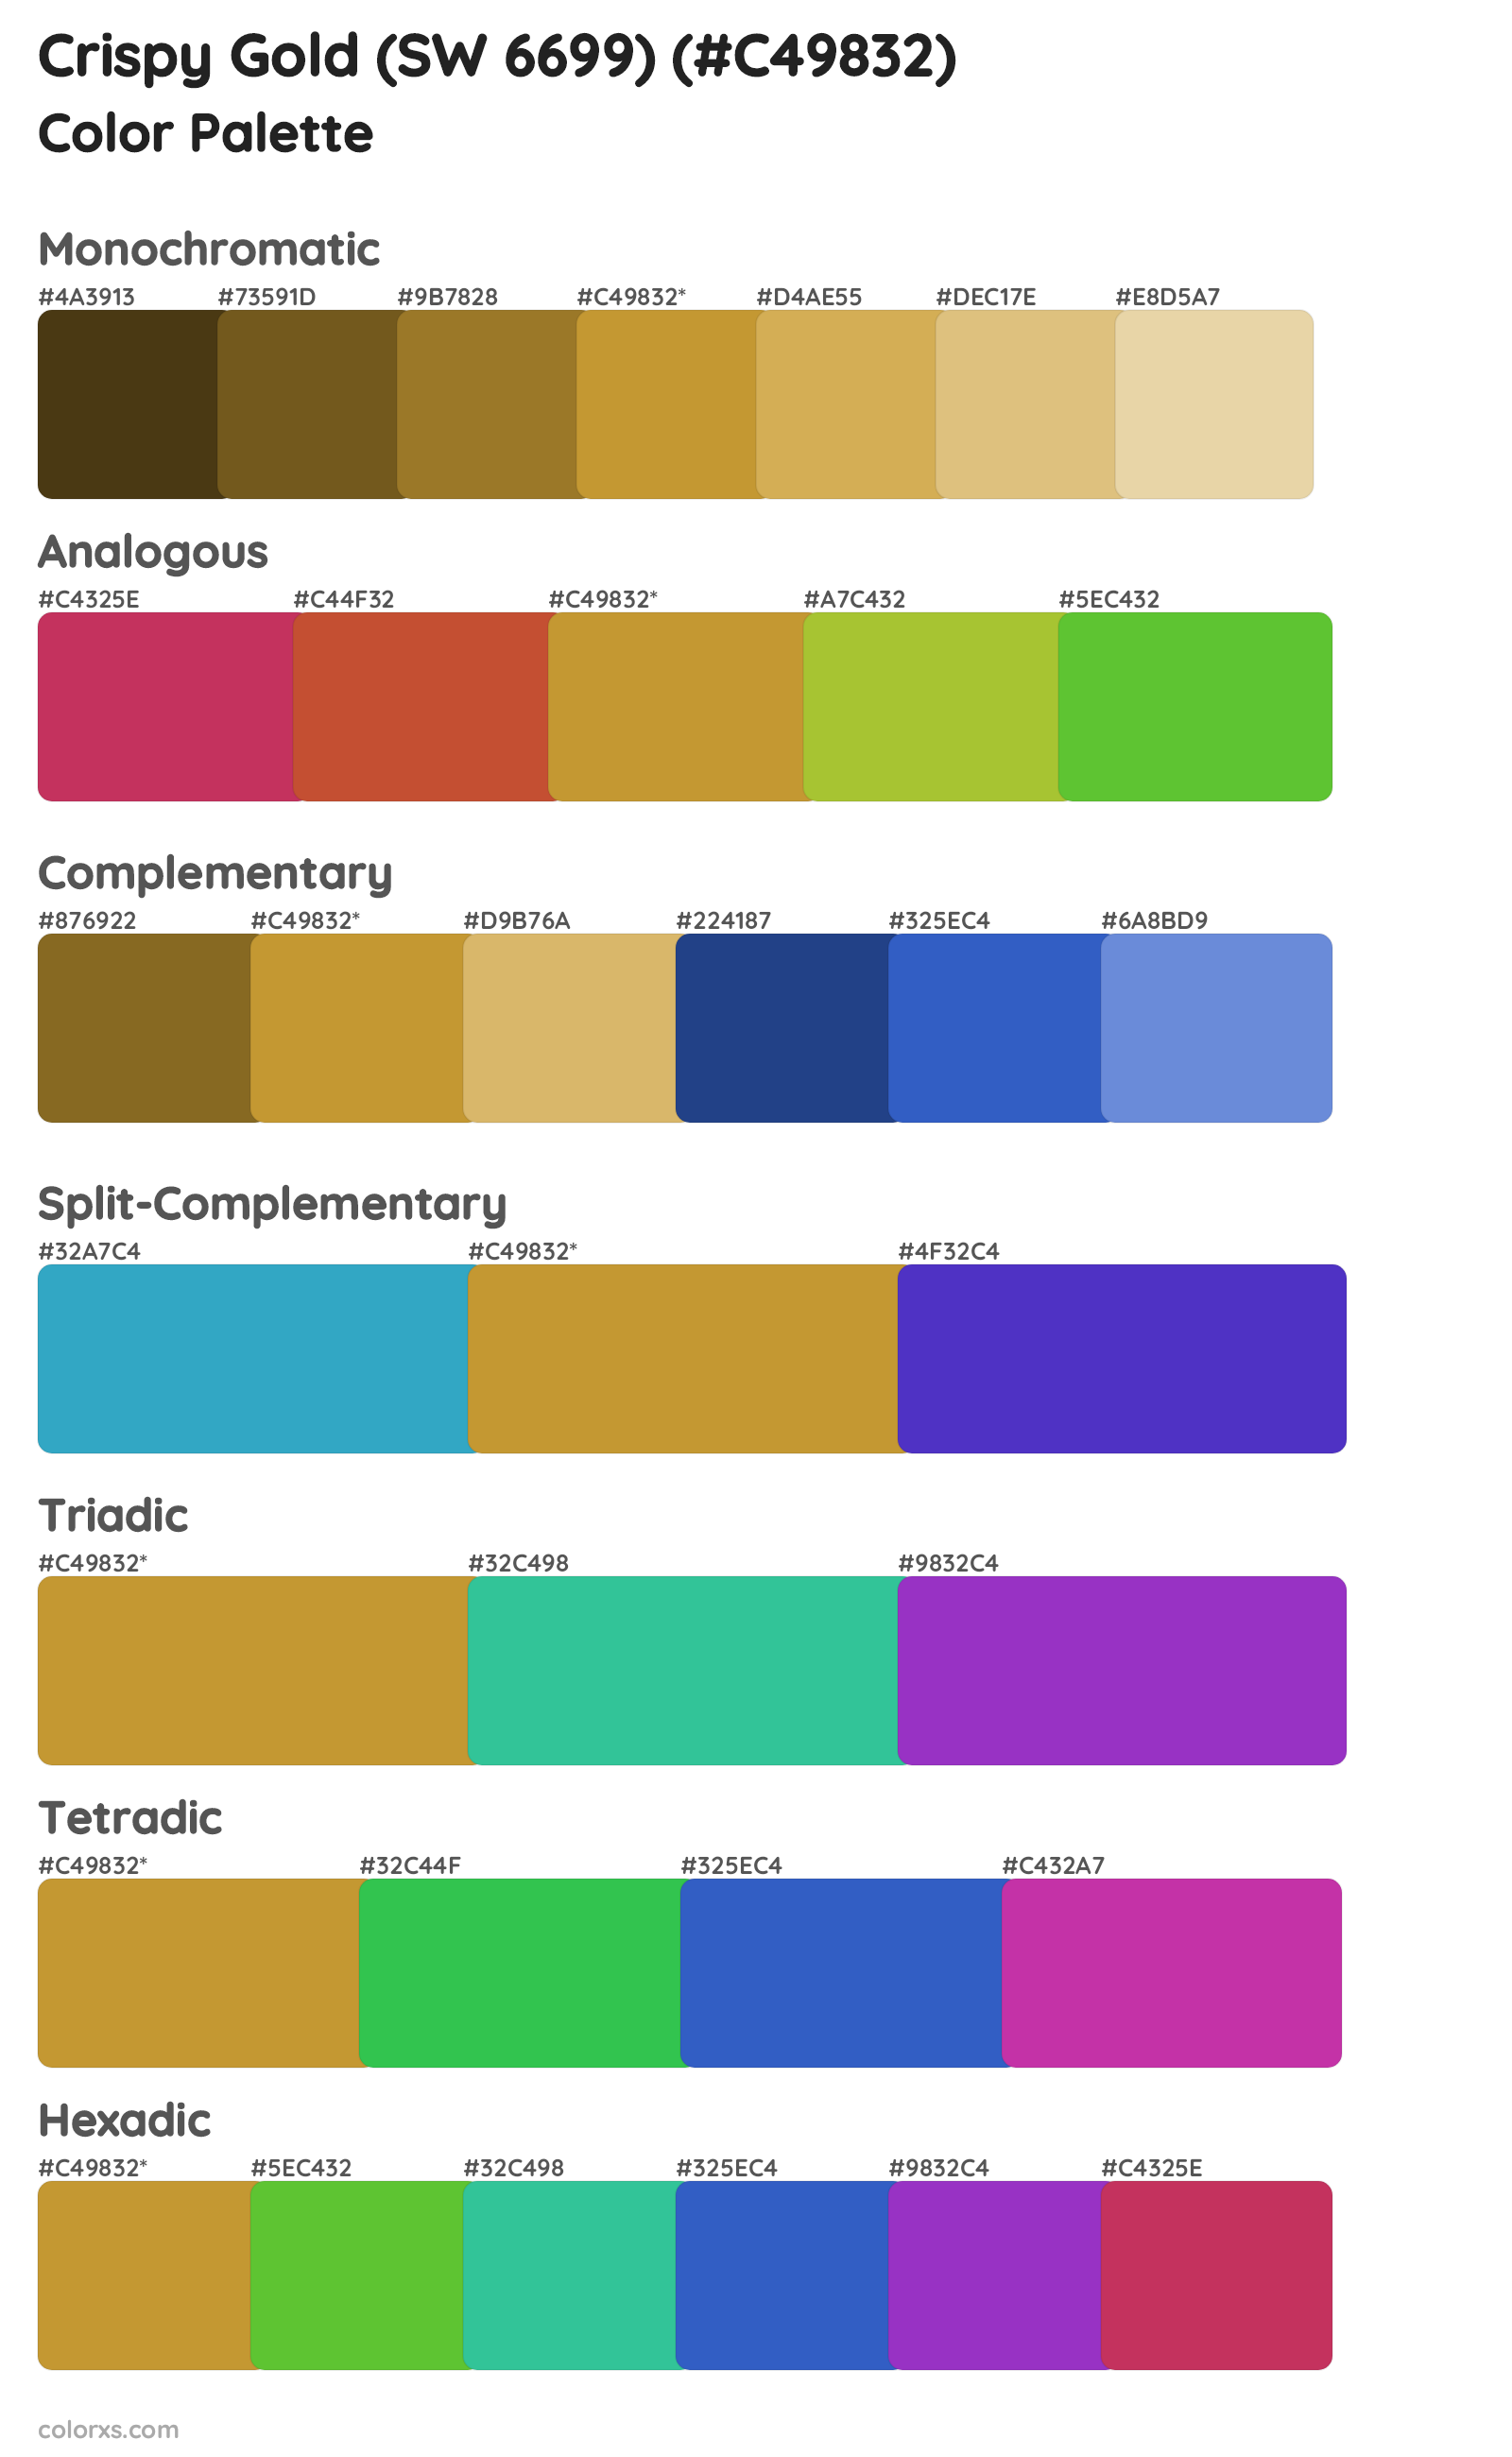 Crispy Gold (SW 6699) Color Scheme Palettes